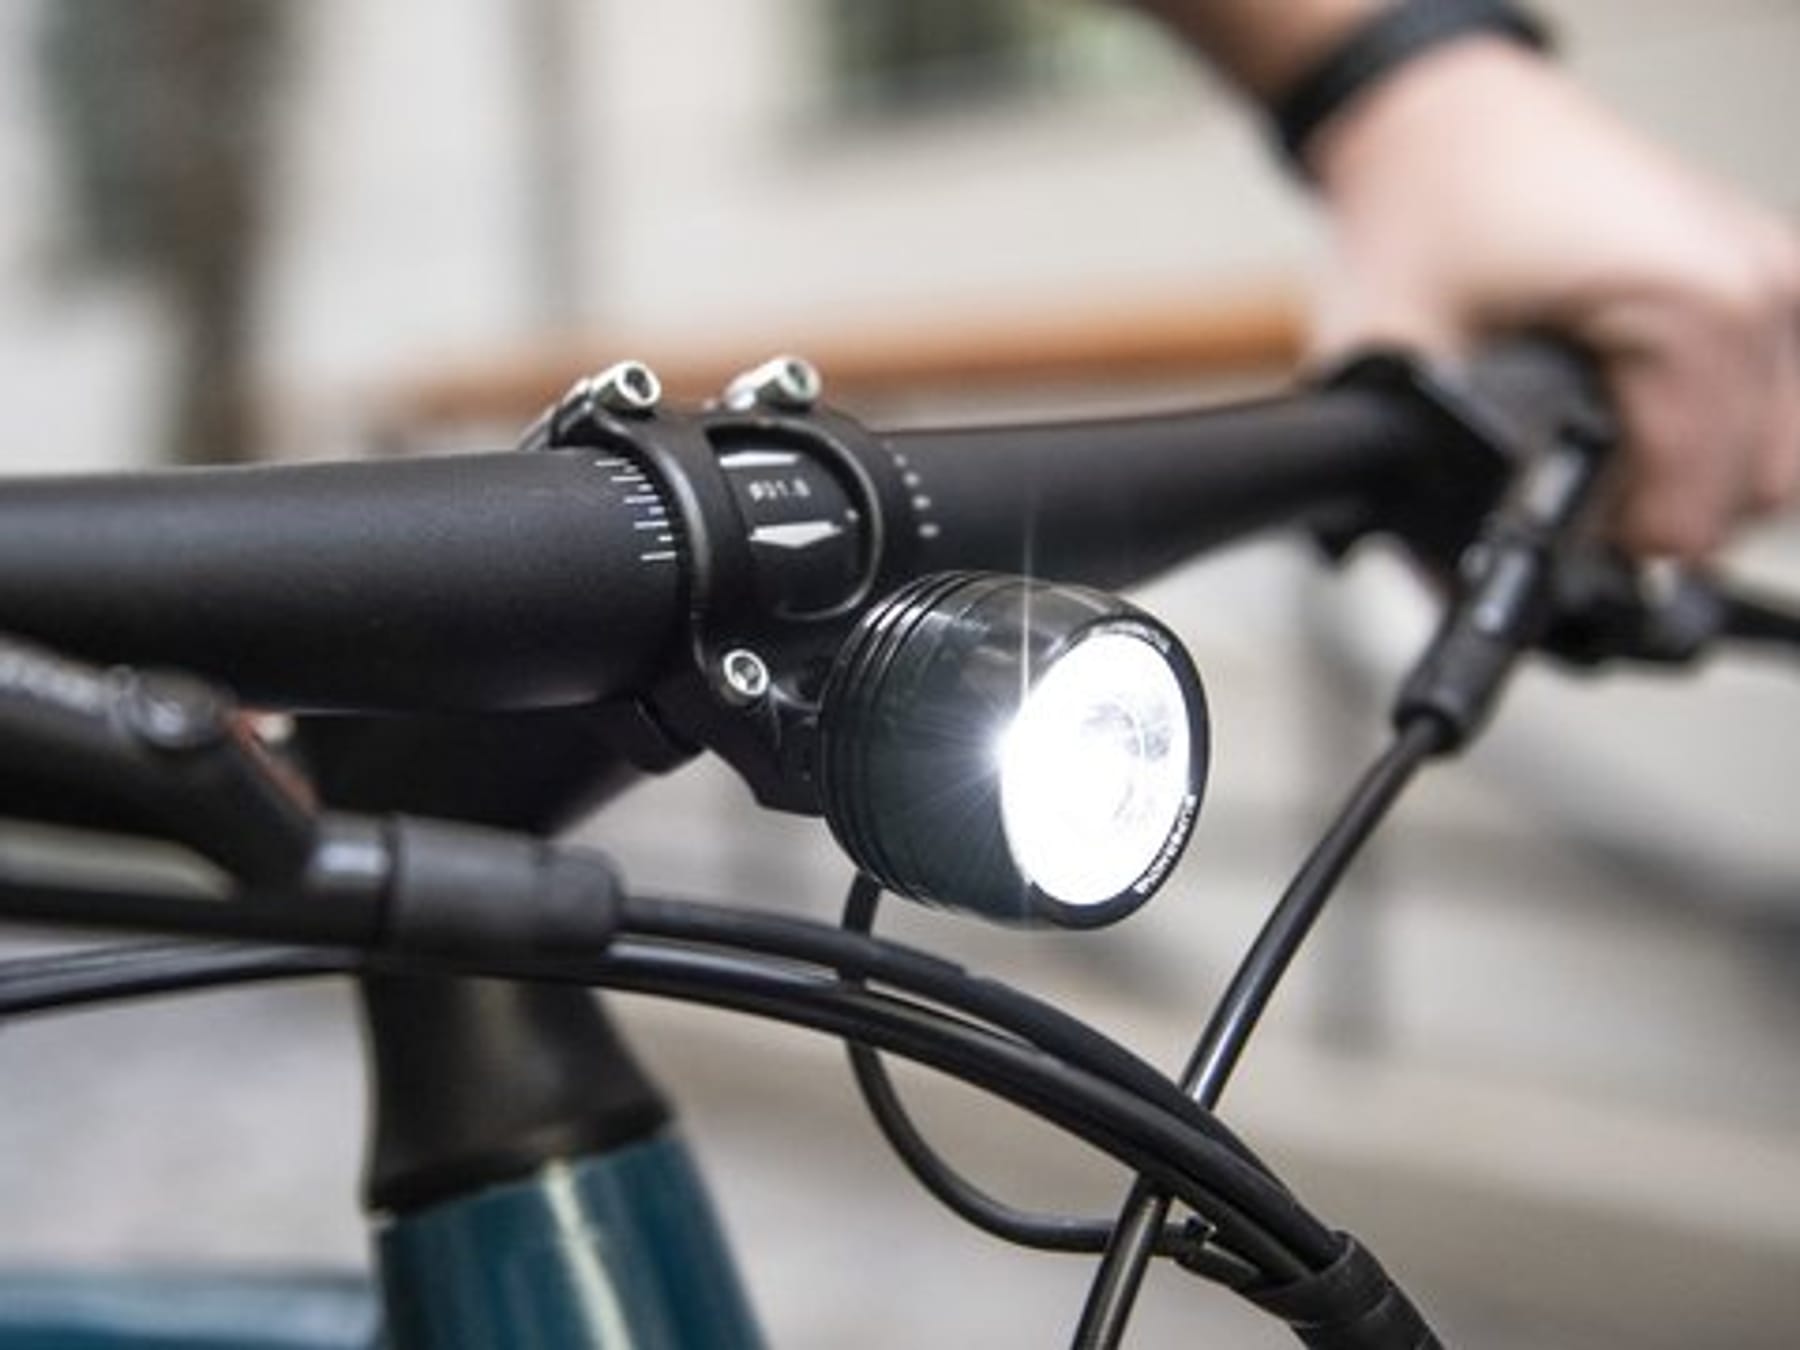 Das Fahrrad mit guter Beleuchtung fit für die dunkle Jahreszeit machen